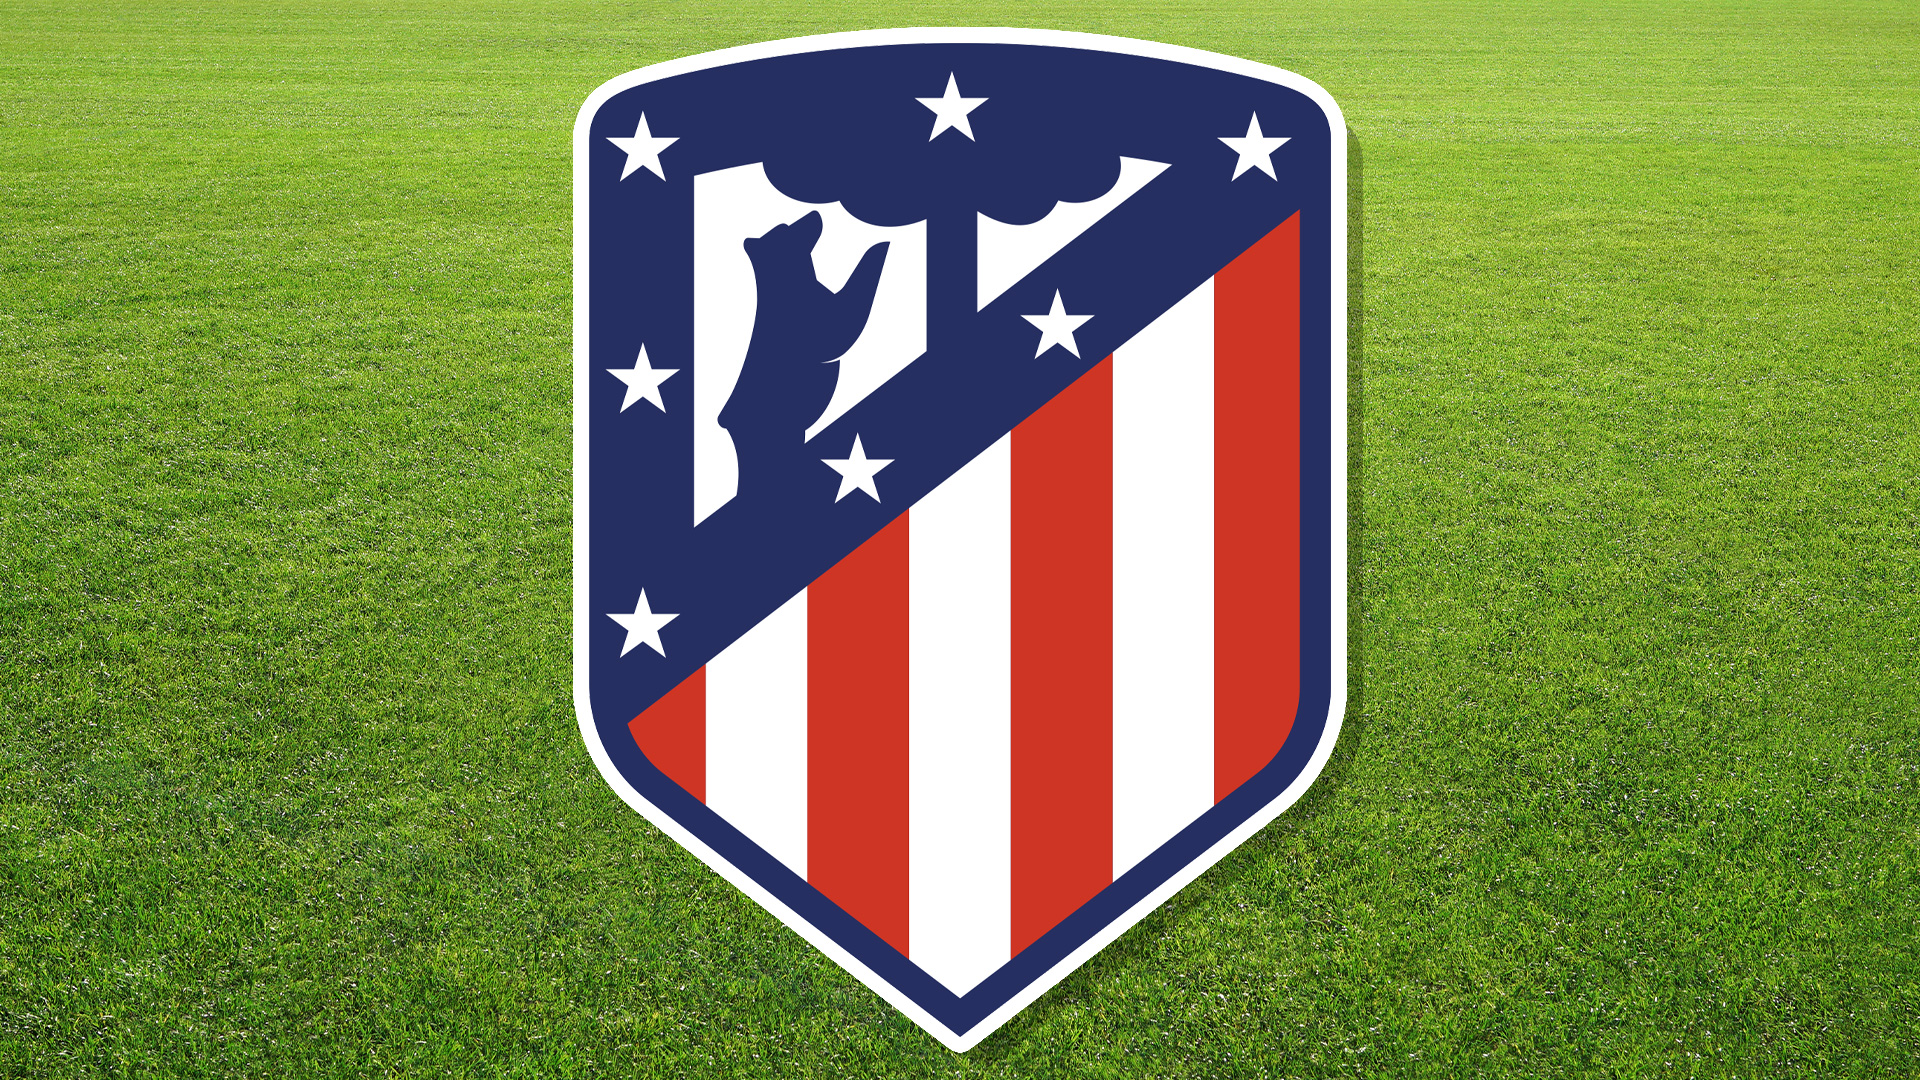 A Spanish football team badge